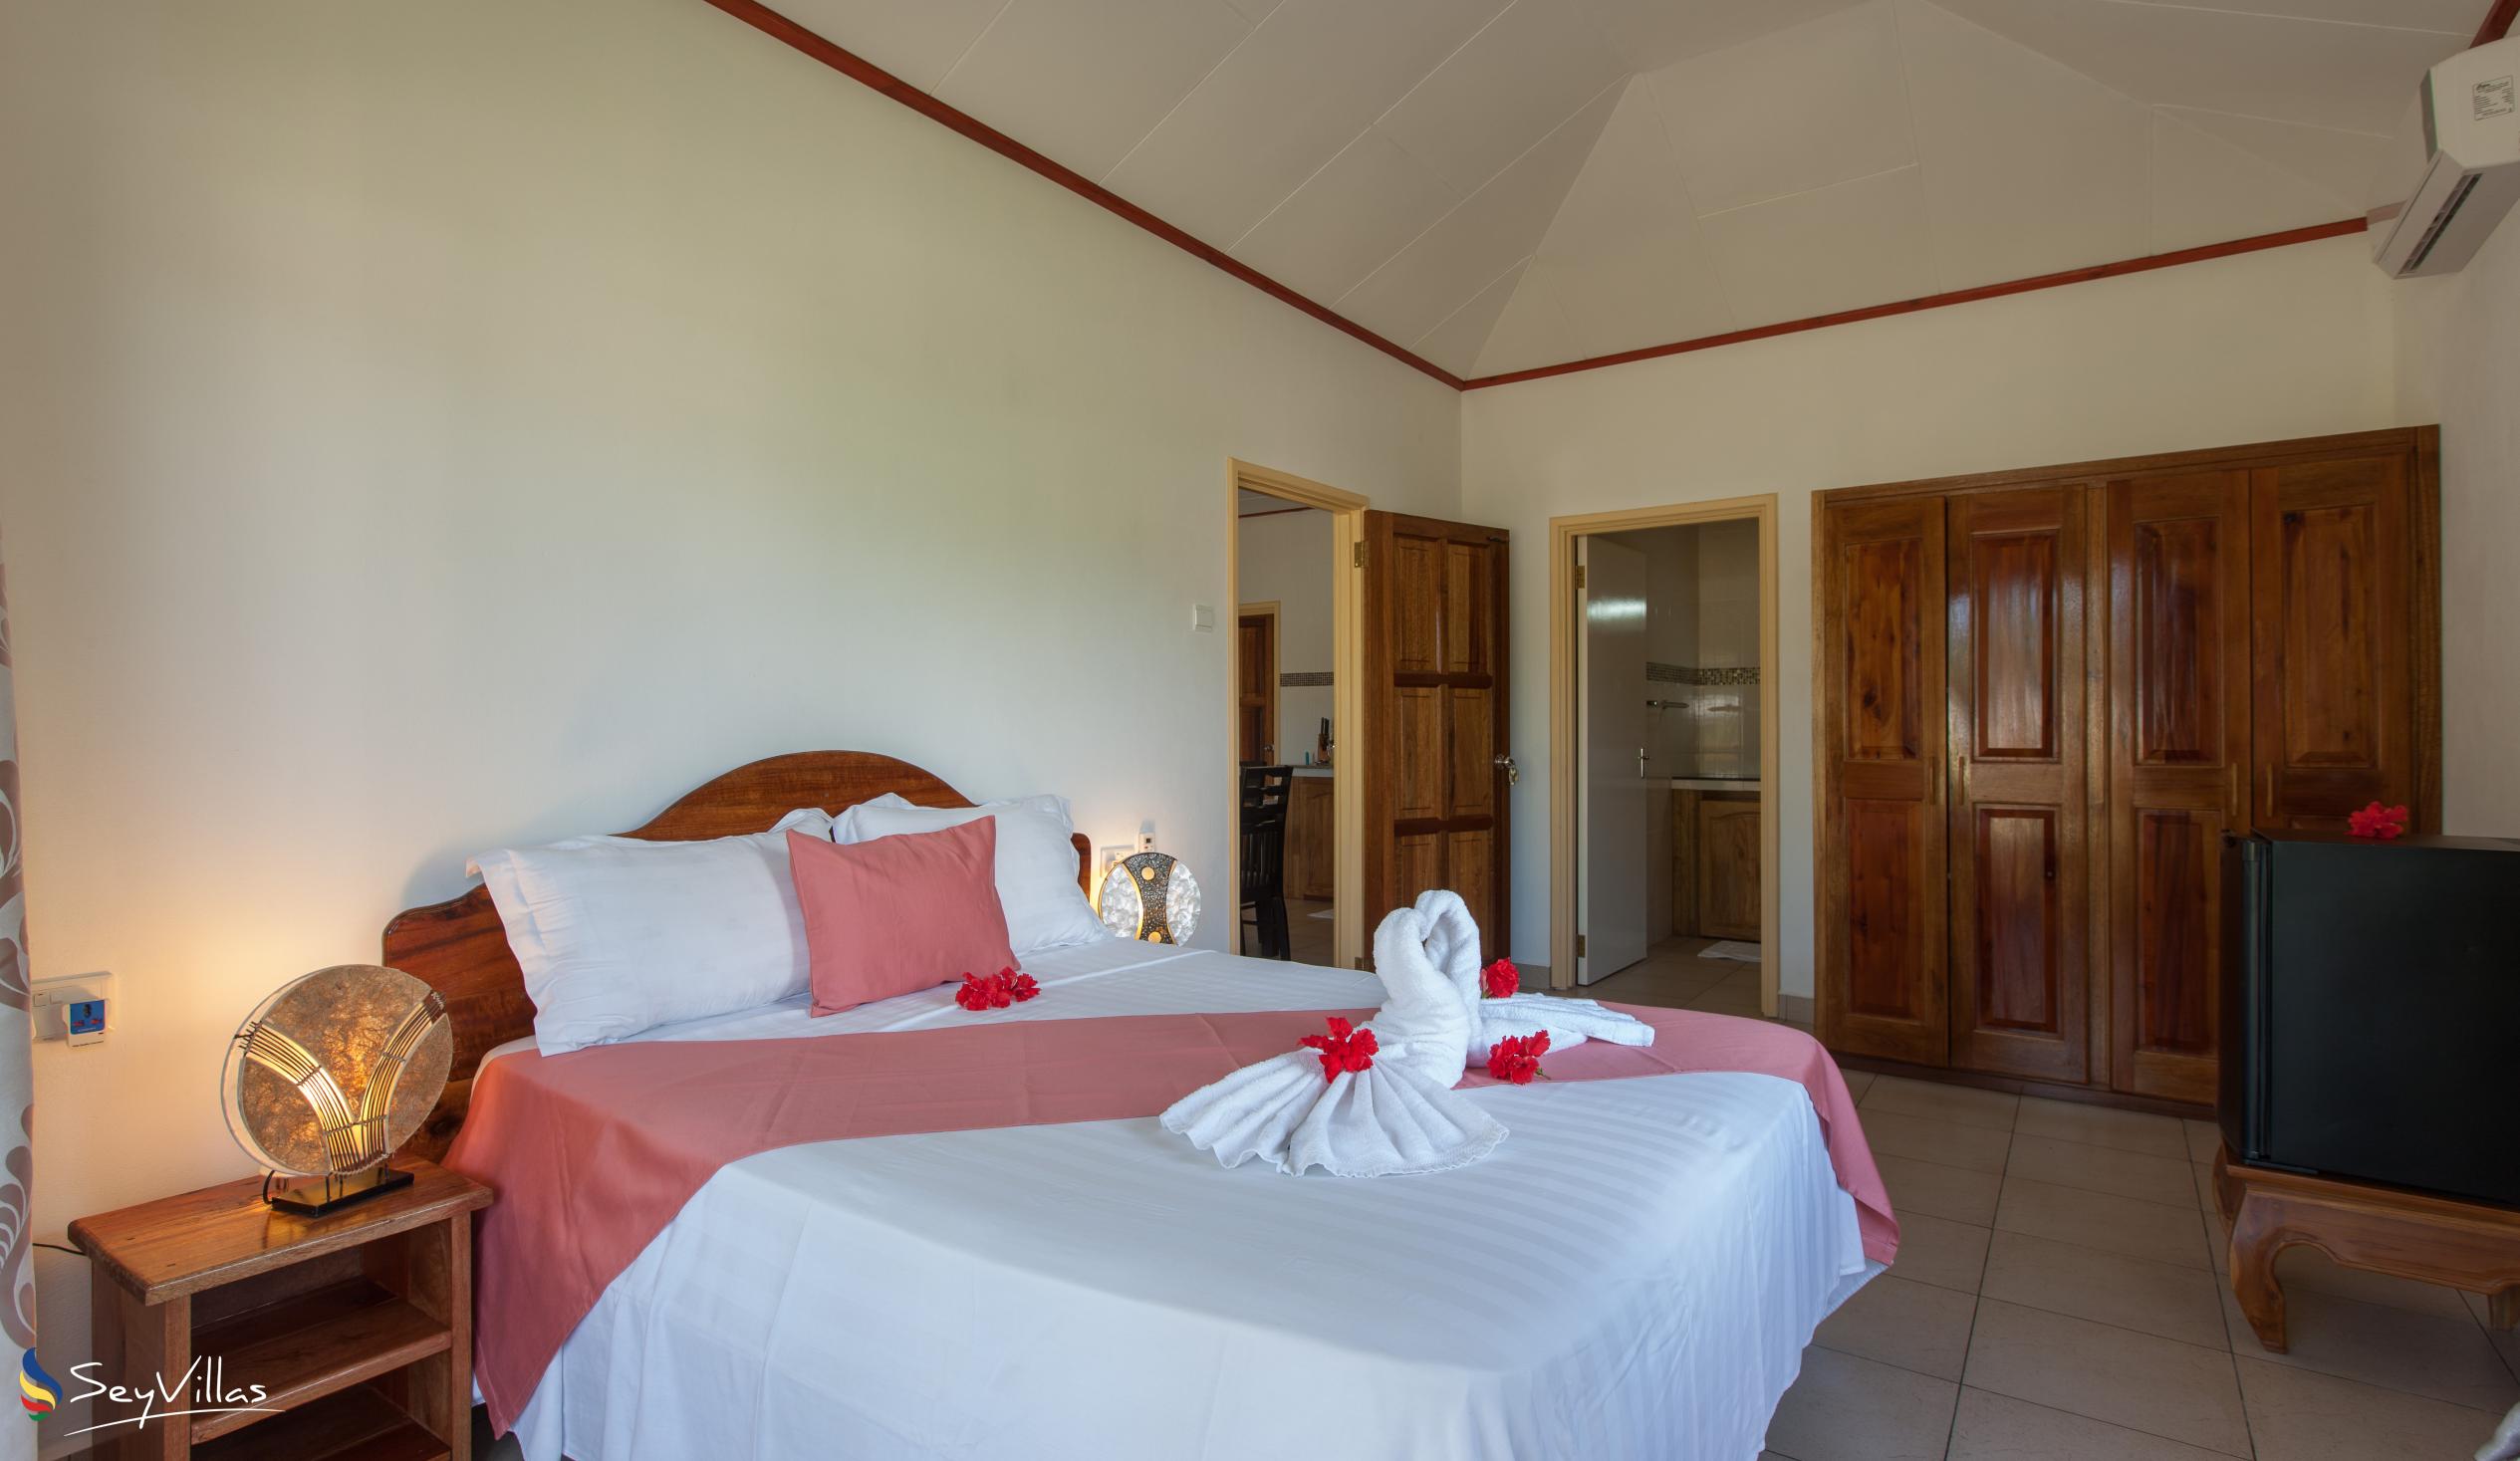 Foto 60: Hostellerie La Digue - Bungalow con 2 camere da letto - La Digue (Seychelles)